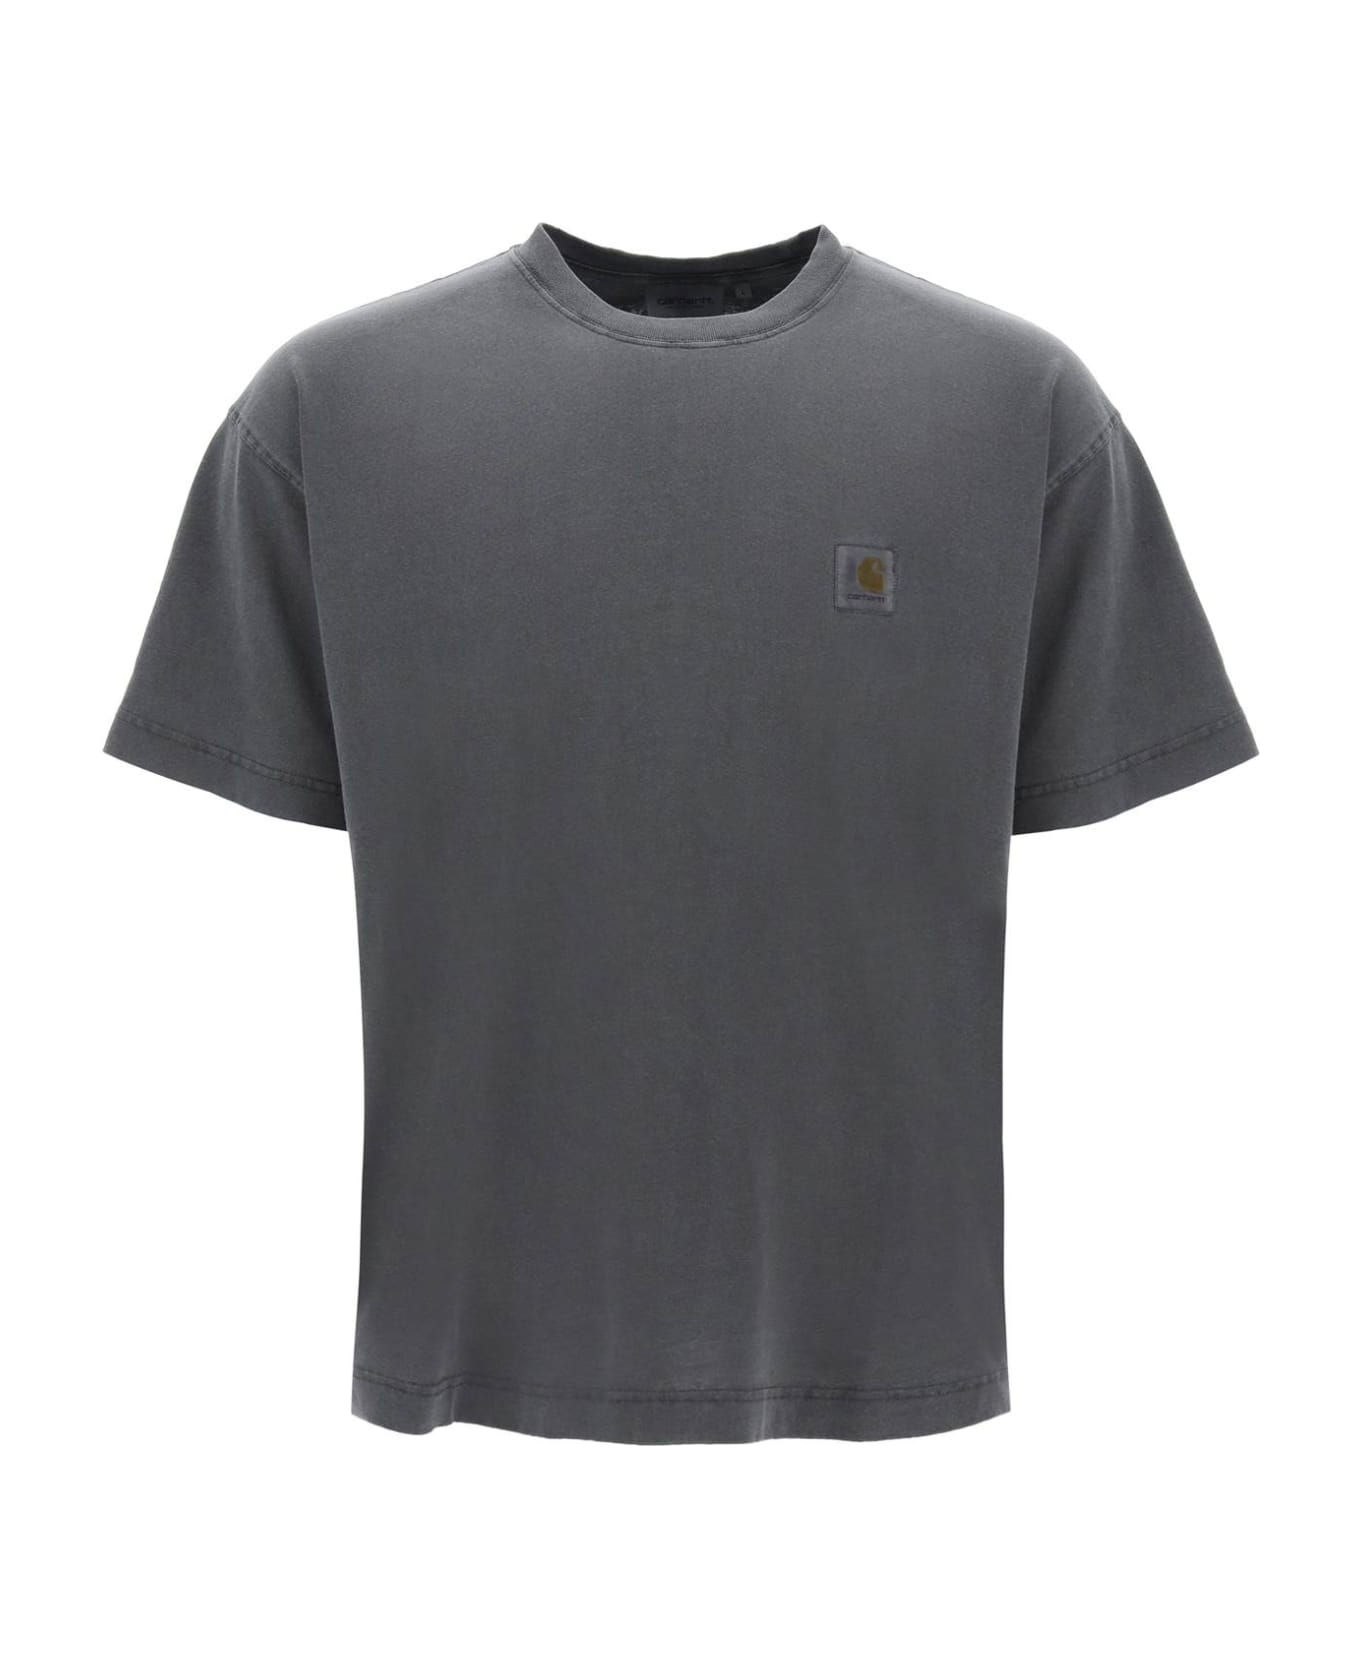 Carhartt Nelson T-shirt - Charcoal シャツ